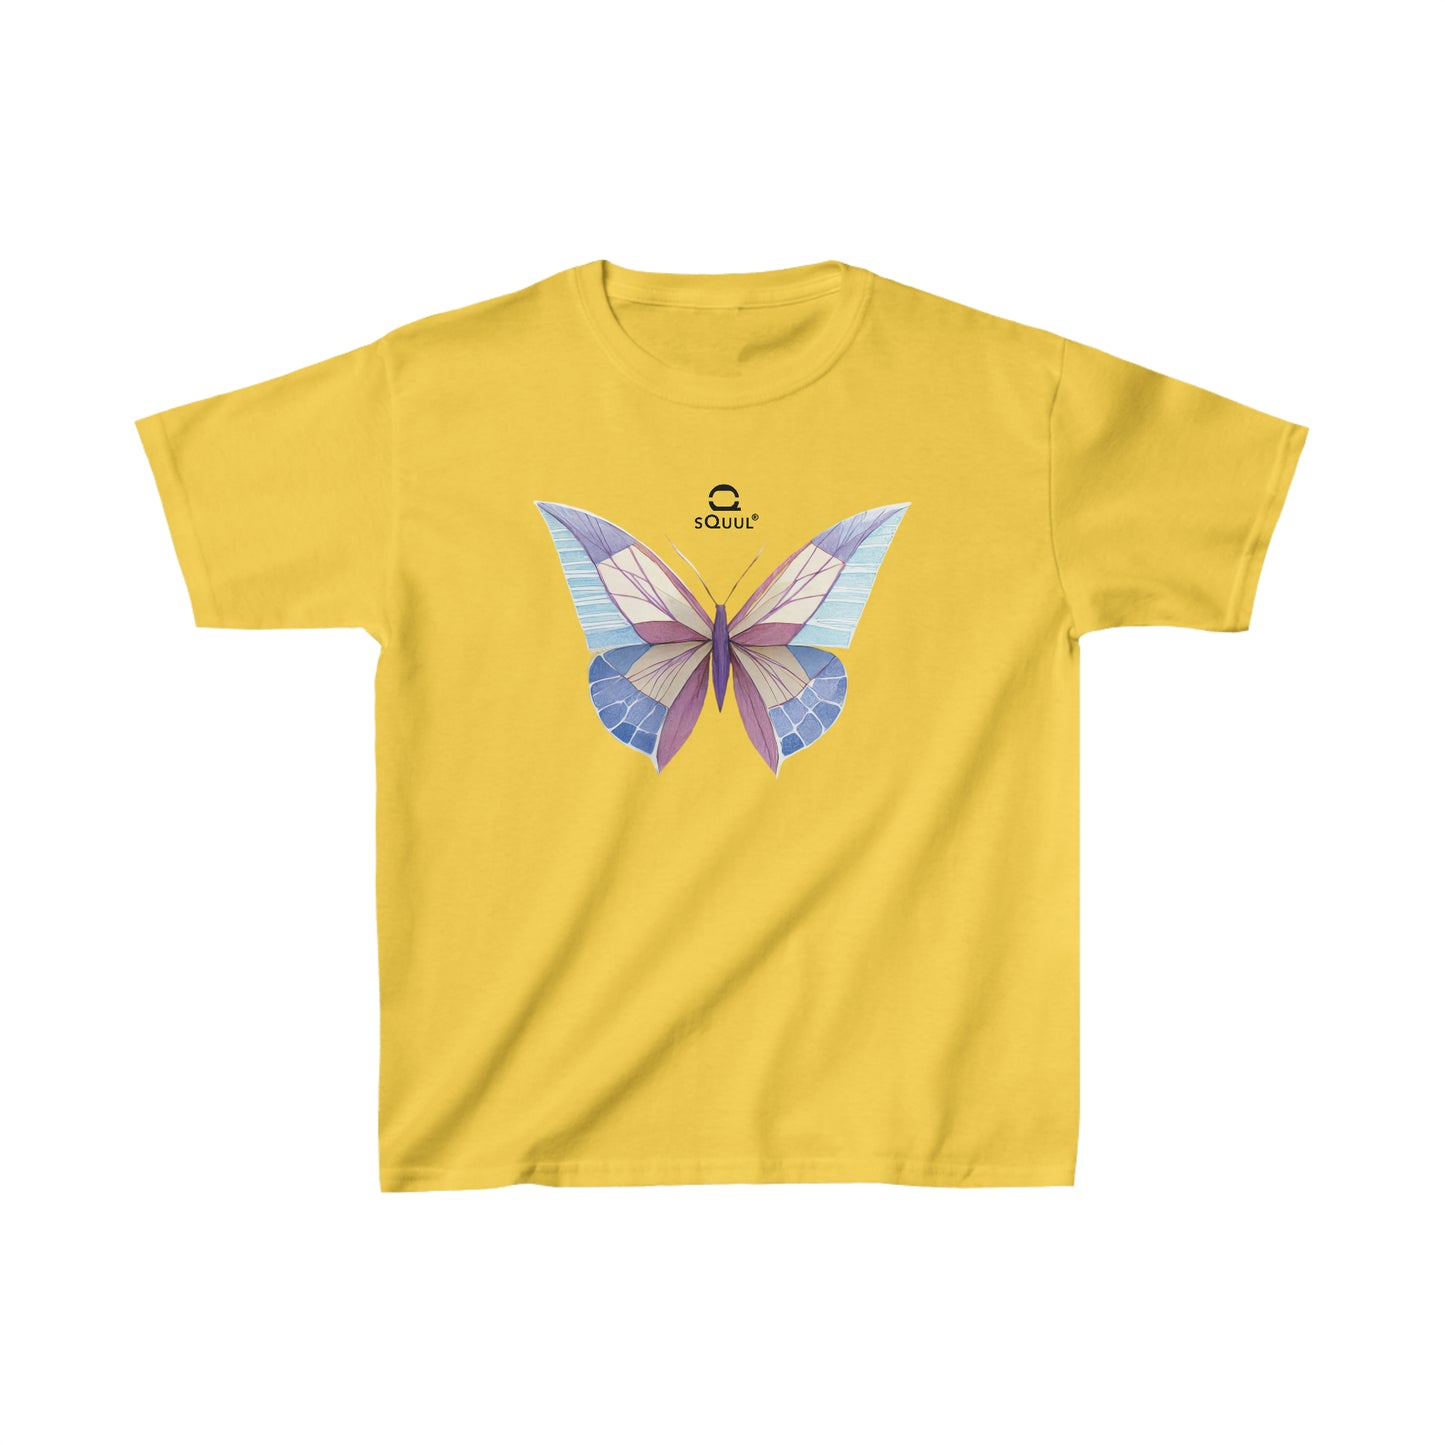 Kids T-Shirt Pastel Butterfly #SquulOfButterflies